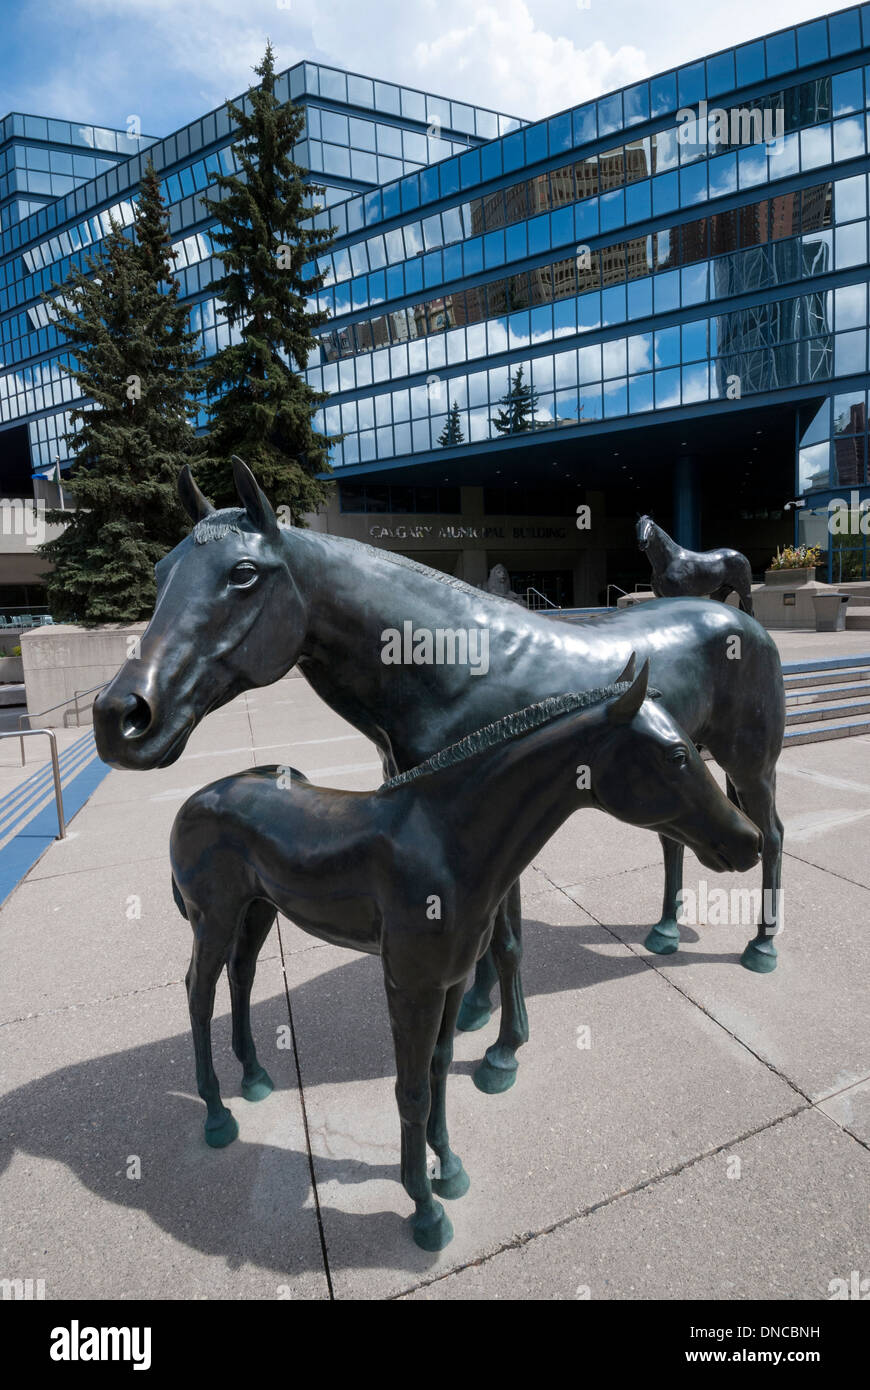 La scultura di cavallo sulla terrazza vicino alla entrata del nuovo edificio comunale nella città di Calgary Alberta. Foto Stock